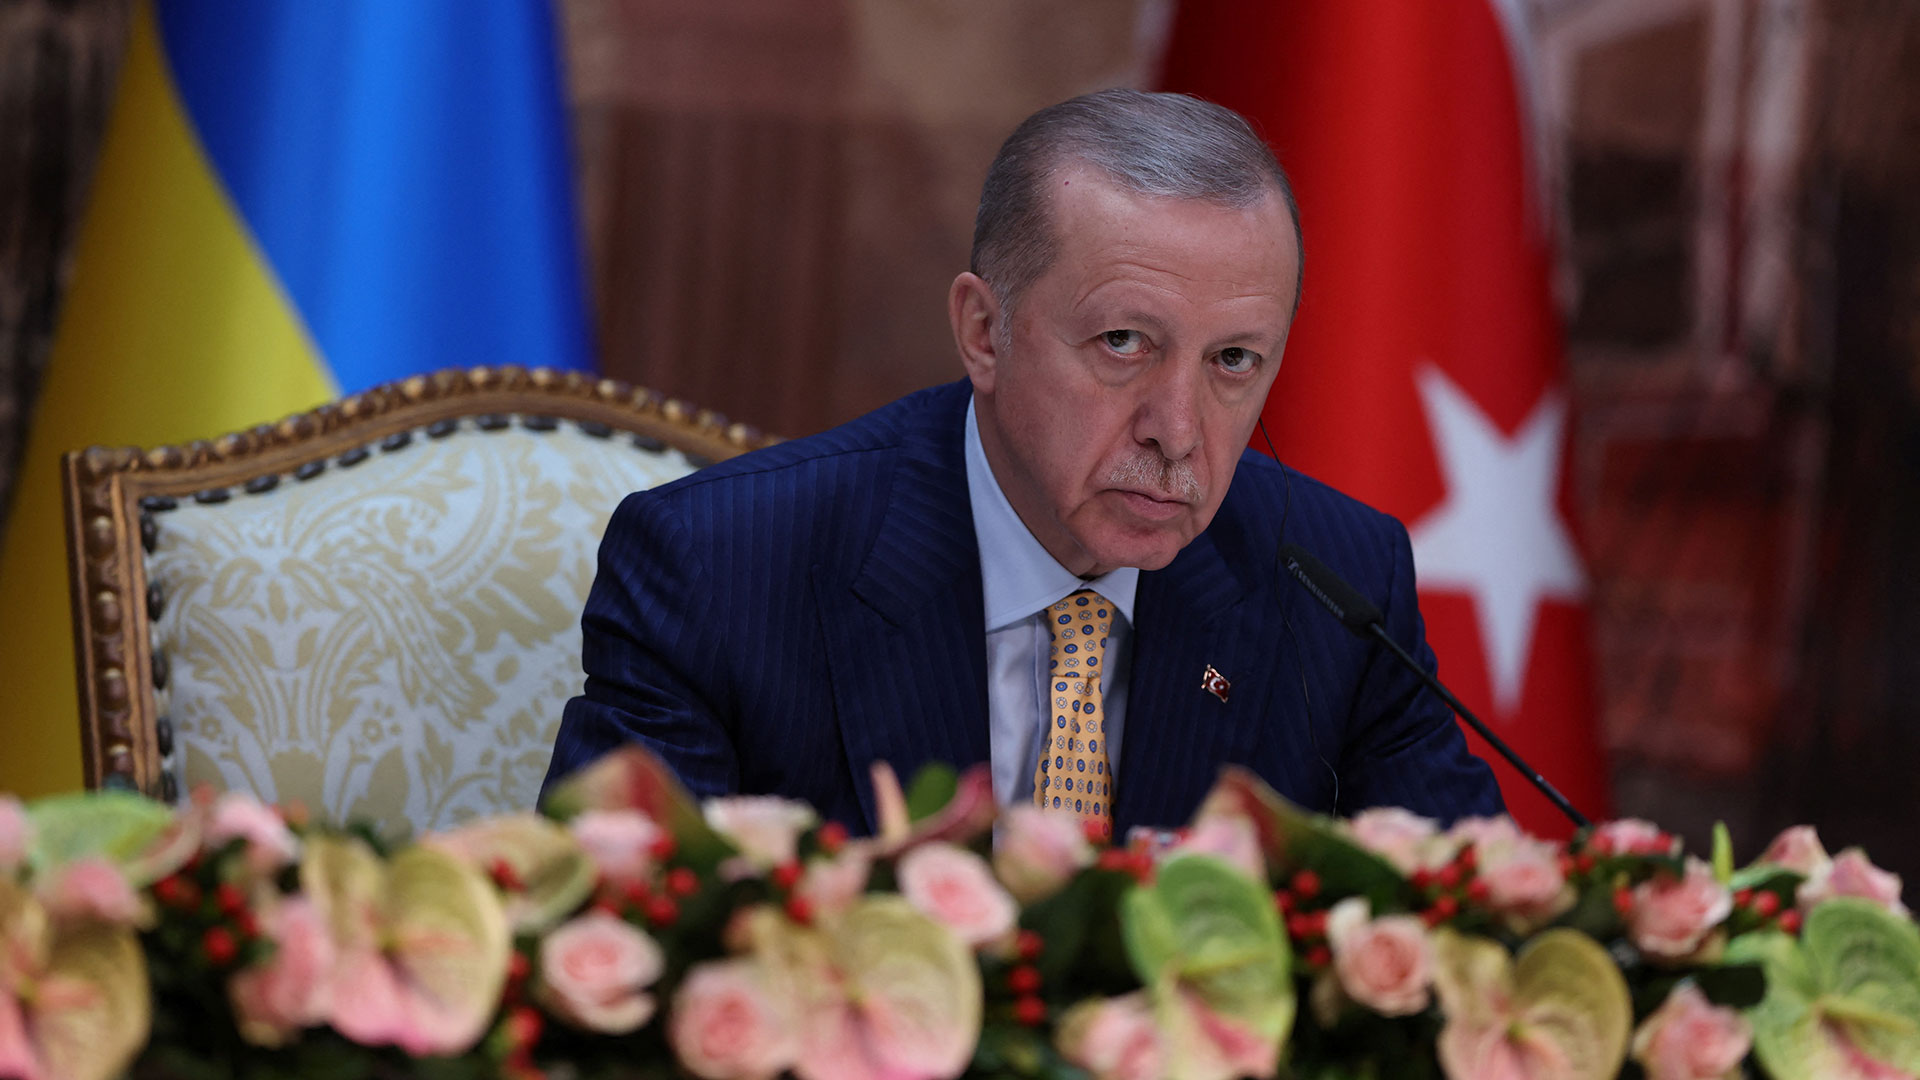 Güle güle Tayyip – Ο Ερντογάν ανακοίνωσε ότι το 2028 αποχωρεί από την πολιτική